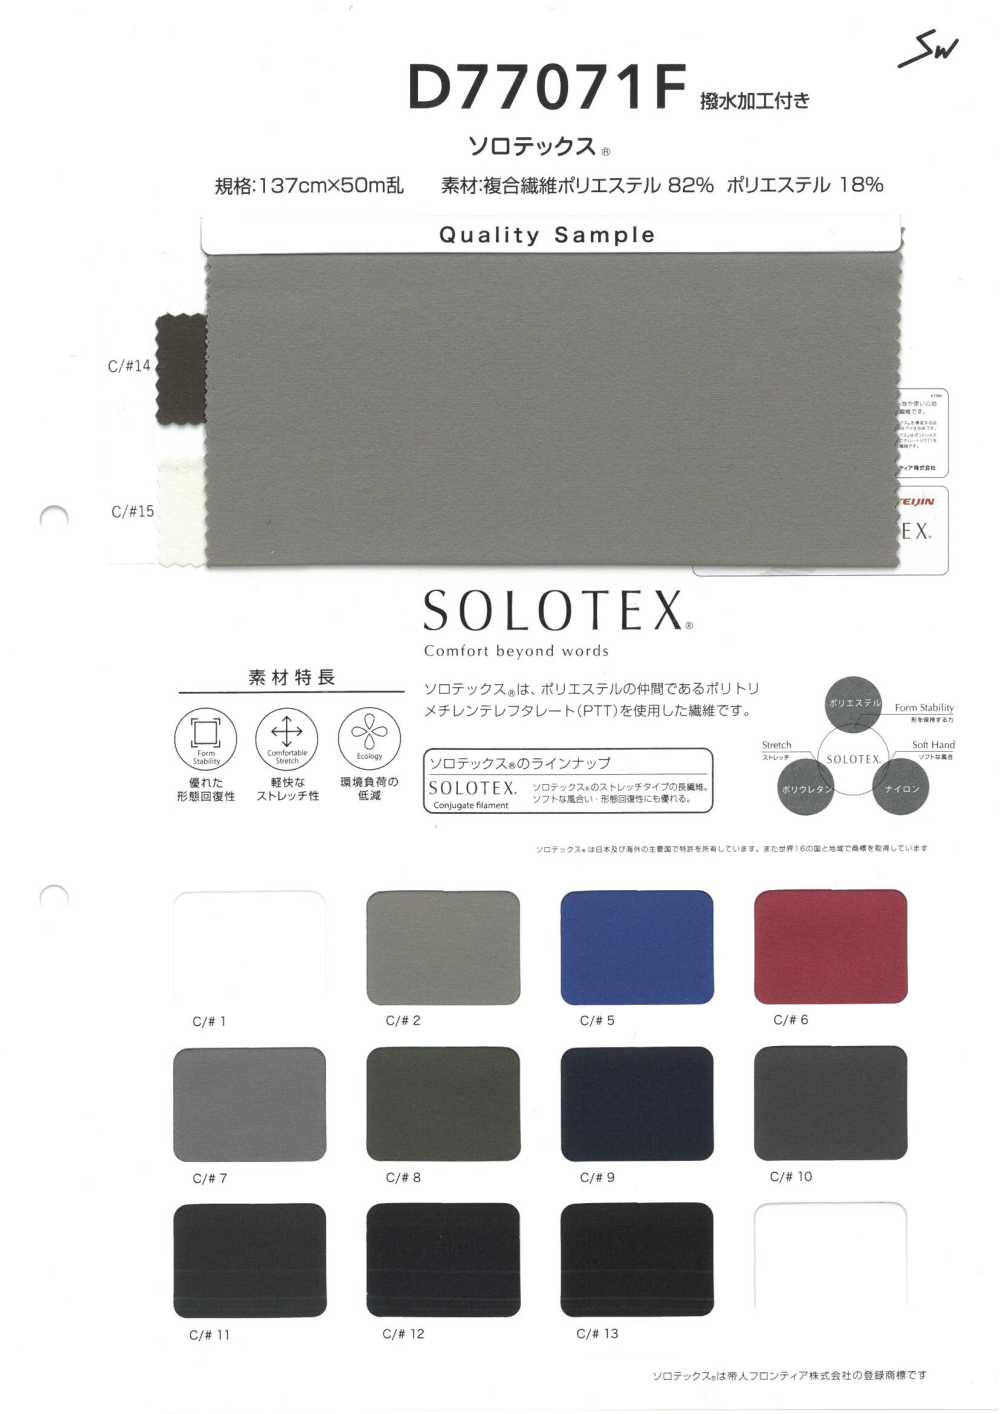 D77071F Solotex[Fabrication De Textile] Fibres Sanwa